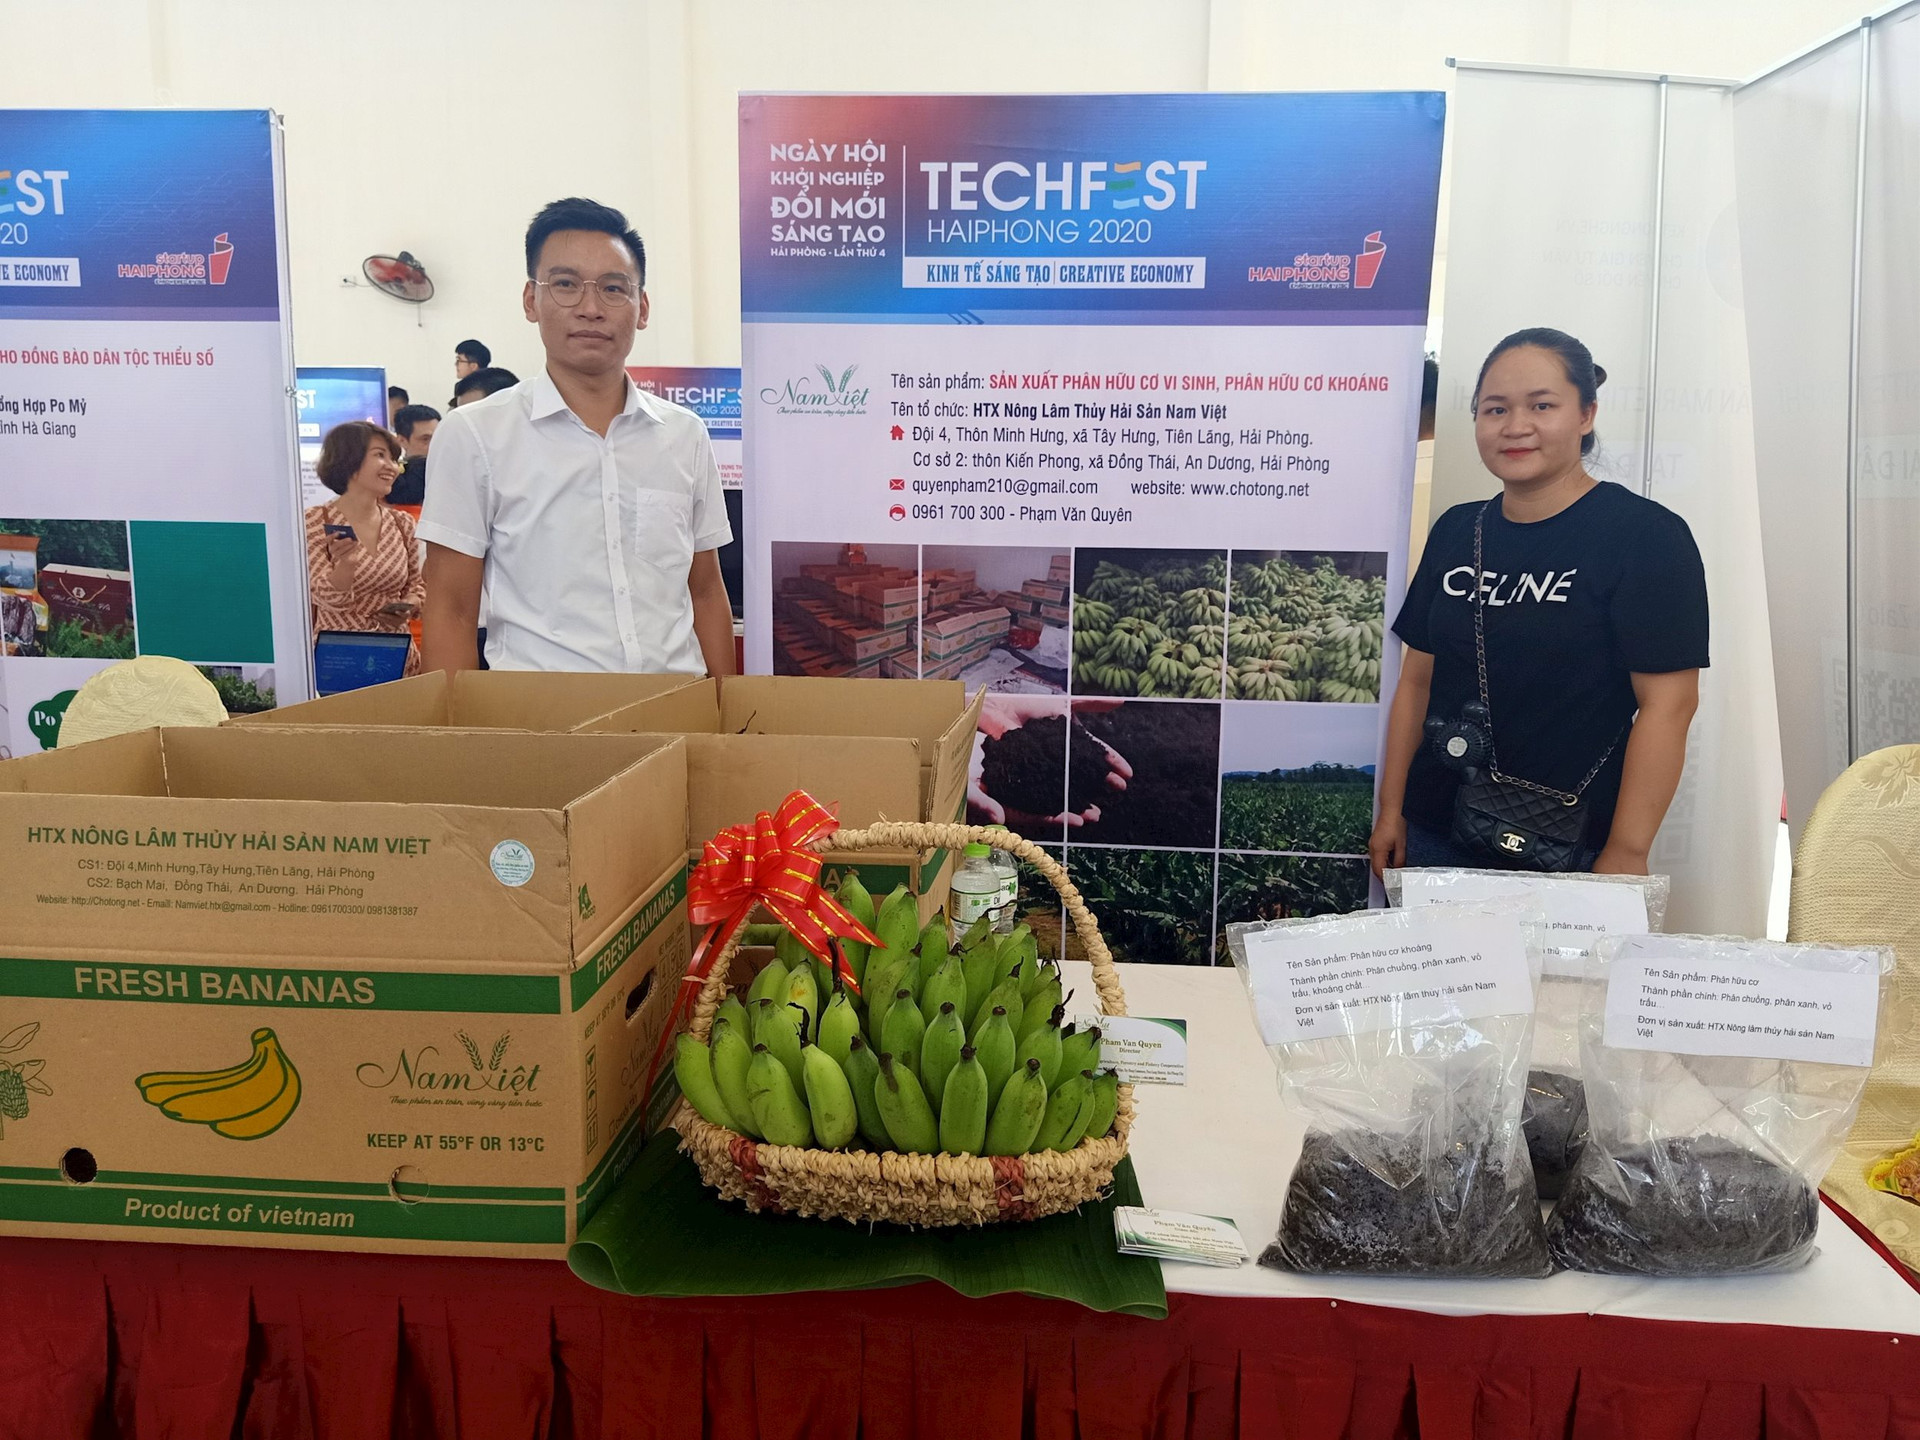 Sản phẩm chuối tây của HTX Nam Việt tại Ngày hội khởi nghiệp đổi mới sáng tạo Hải Phòng lần thứ 4. Ảnh: NVCC.